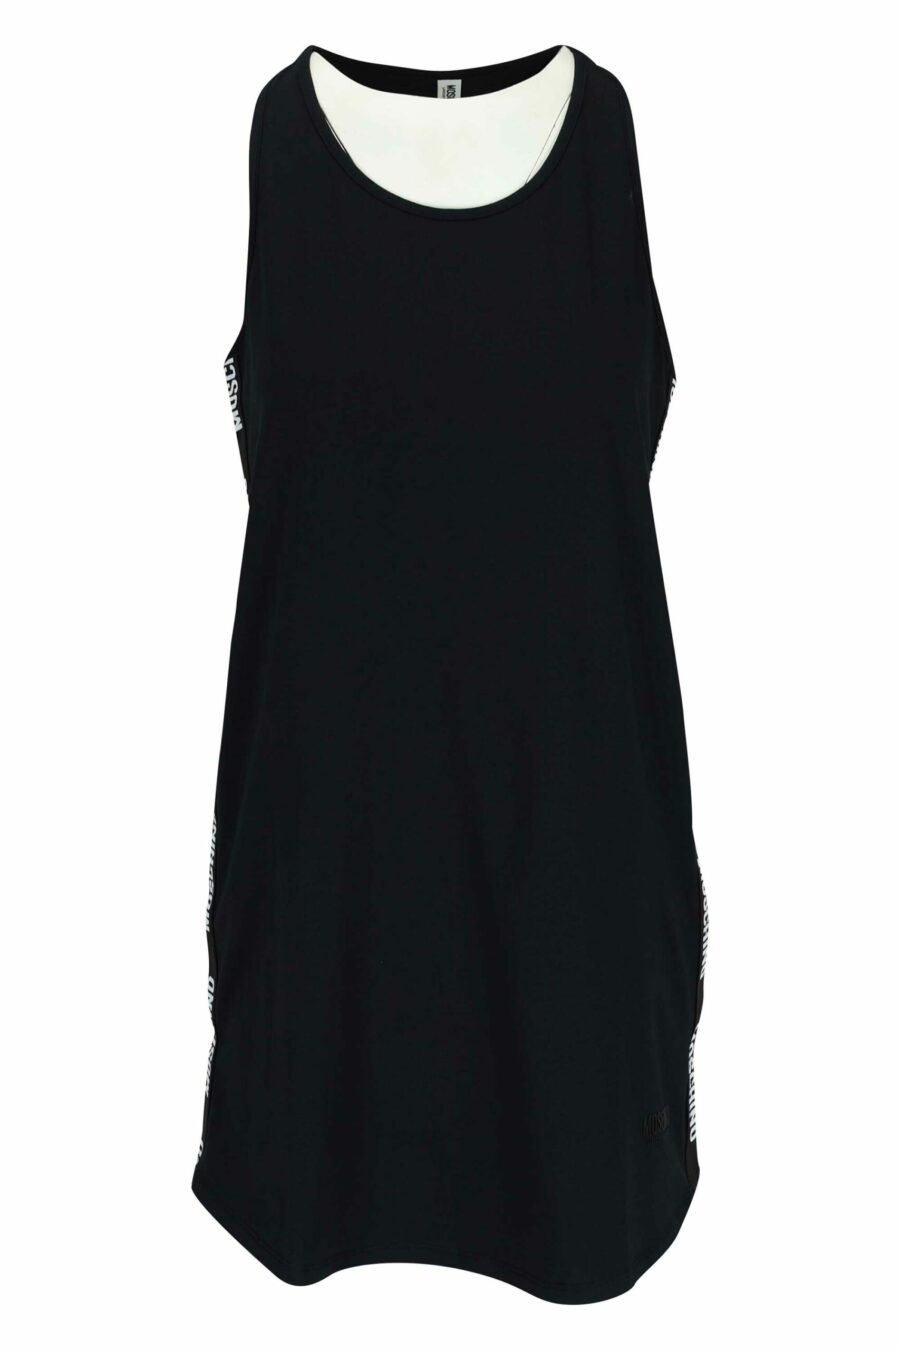 Black dress with monochrome mini-logo - 667113721200 scaled